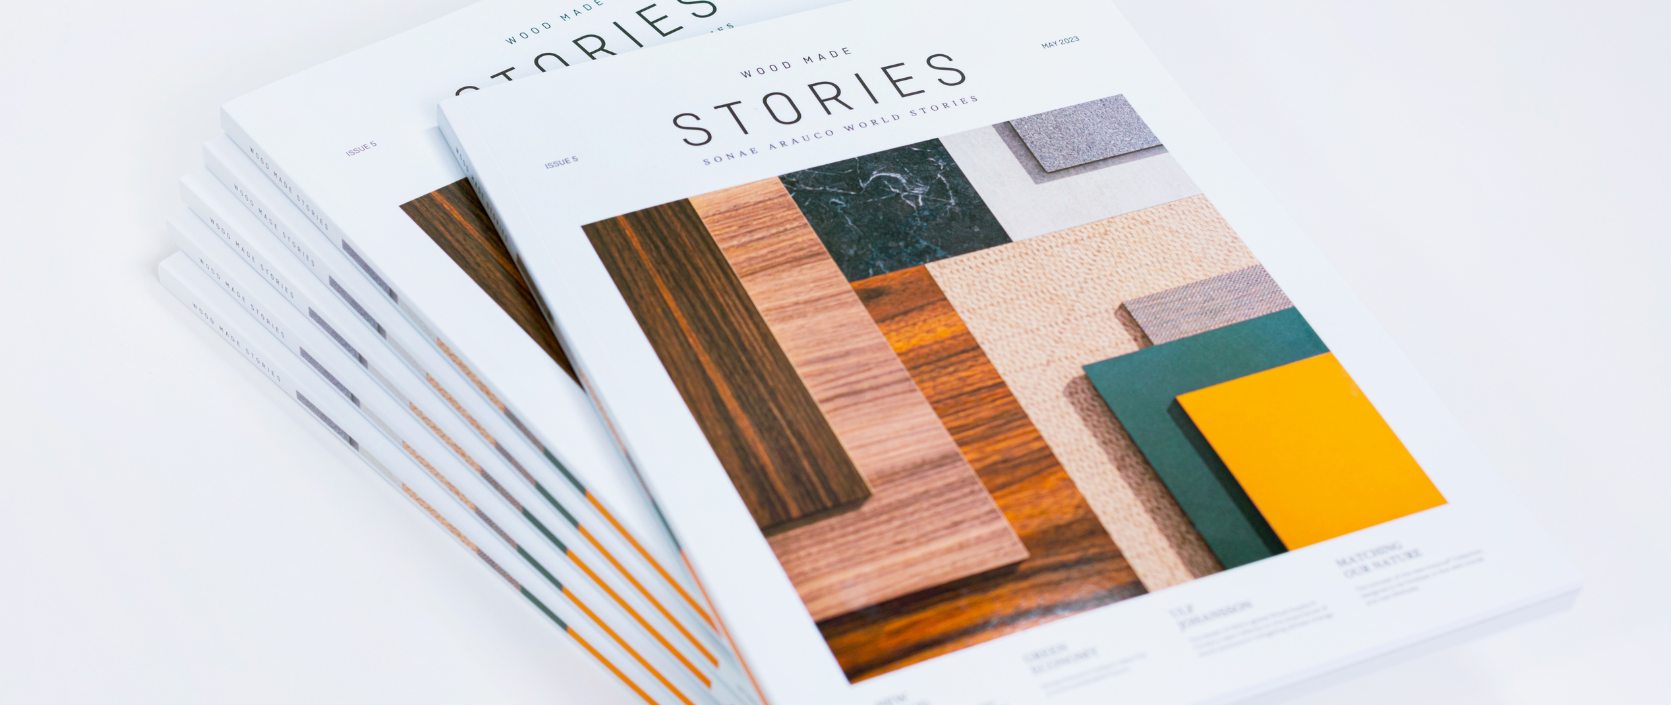 Sonae Arauco lanza la quinta edición de la revista Wood Made Stories.